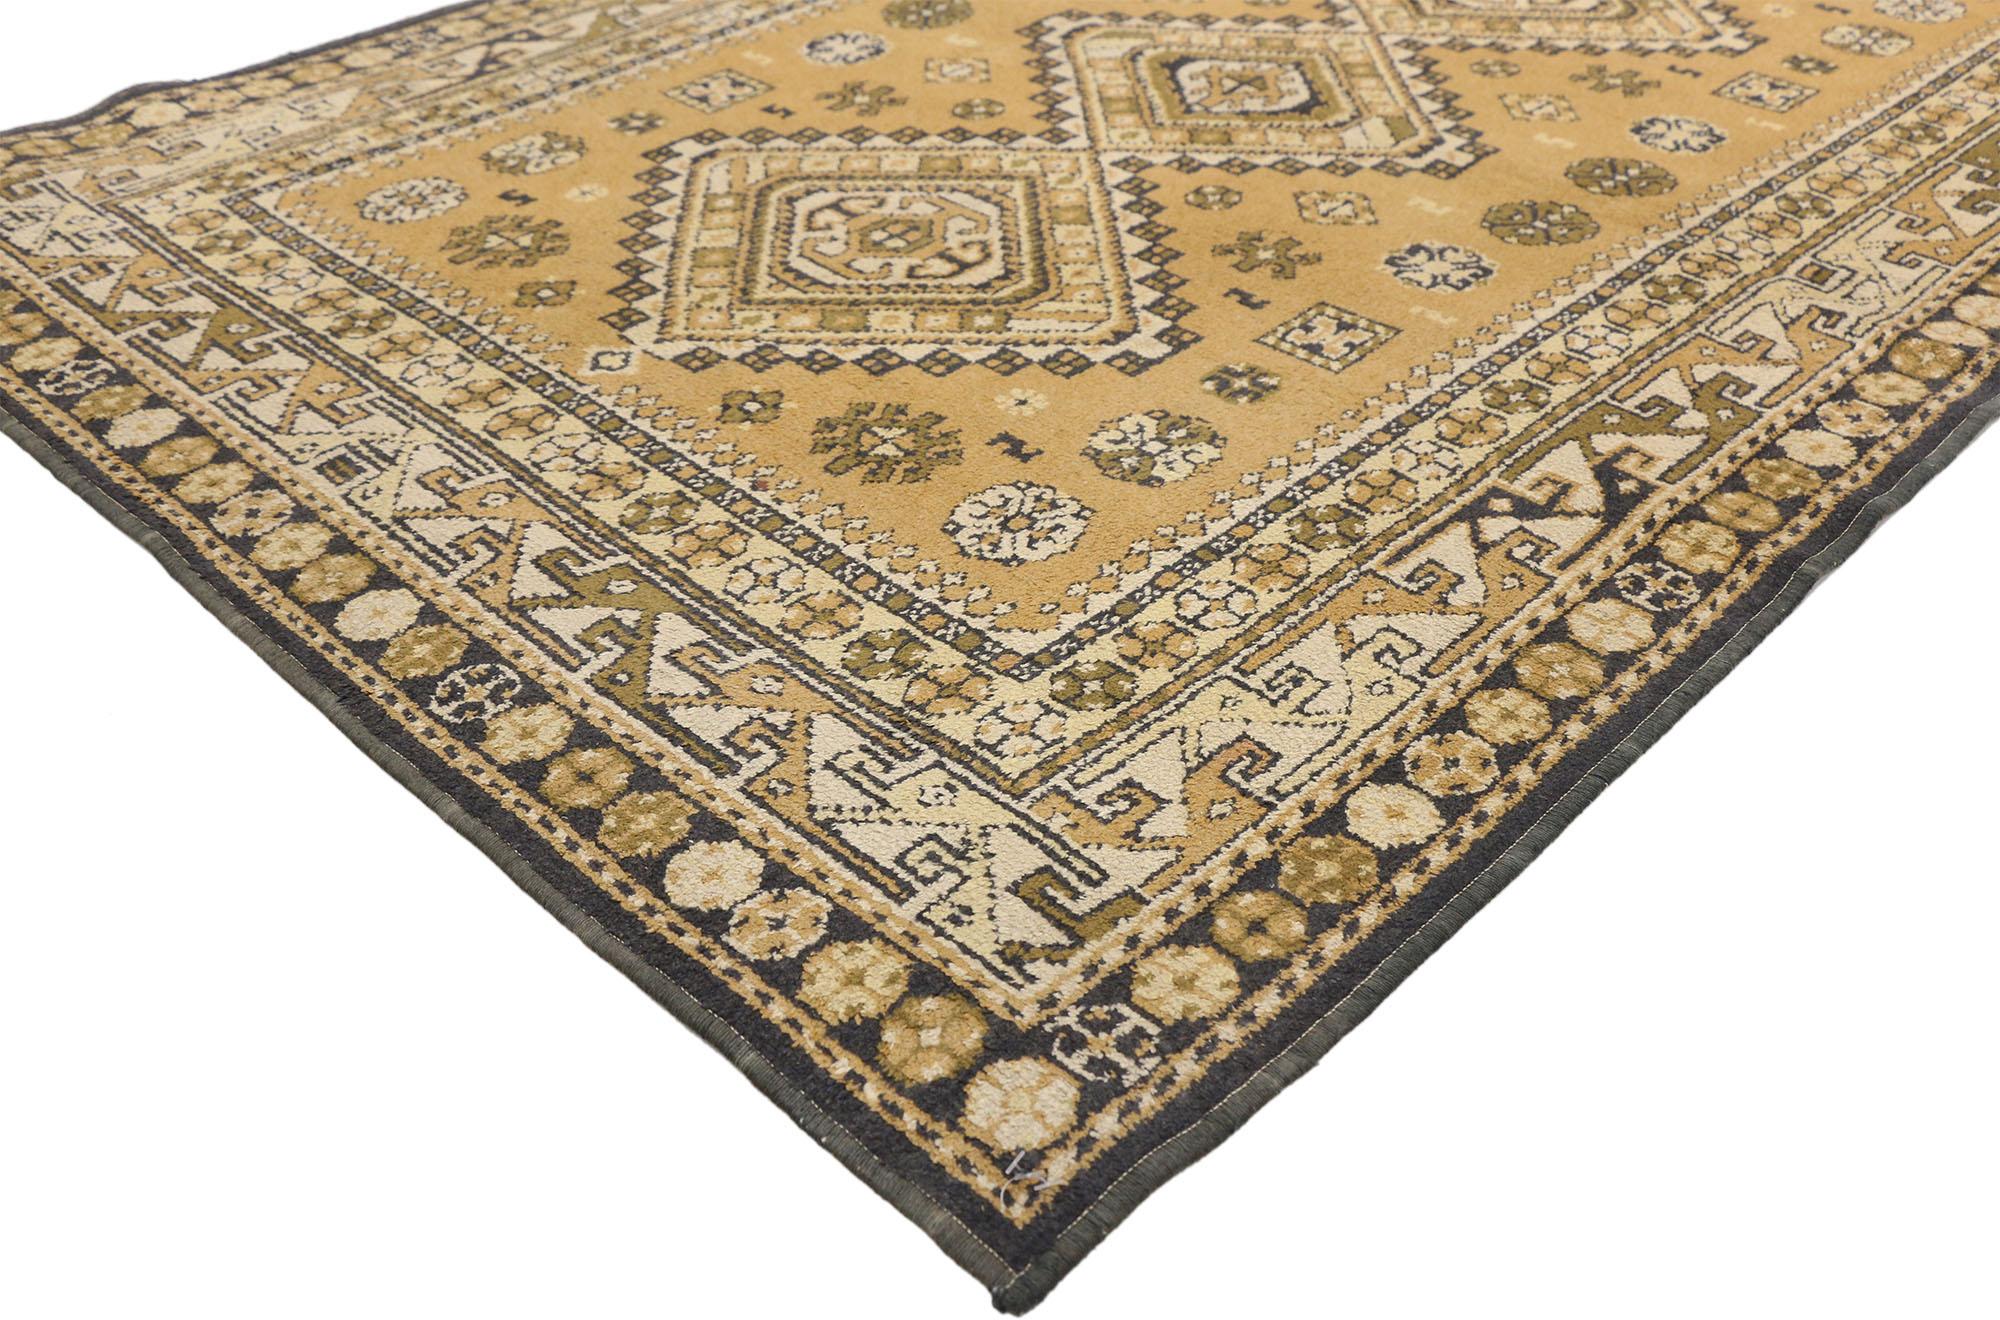 72249 Türkischer Vintage-Teppich mit Tribal-Stil, 03'10 x 05'05. Stammeszauber tanzt mit anatolischer Symbolik in diesem handgeknüpften türkischen Teppich aus Wolle im Vintage-Stil. Der neutrale khakifarbene Hintergrund bildet die Bühne für das